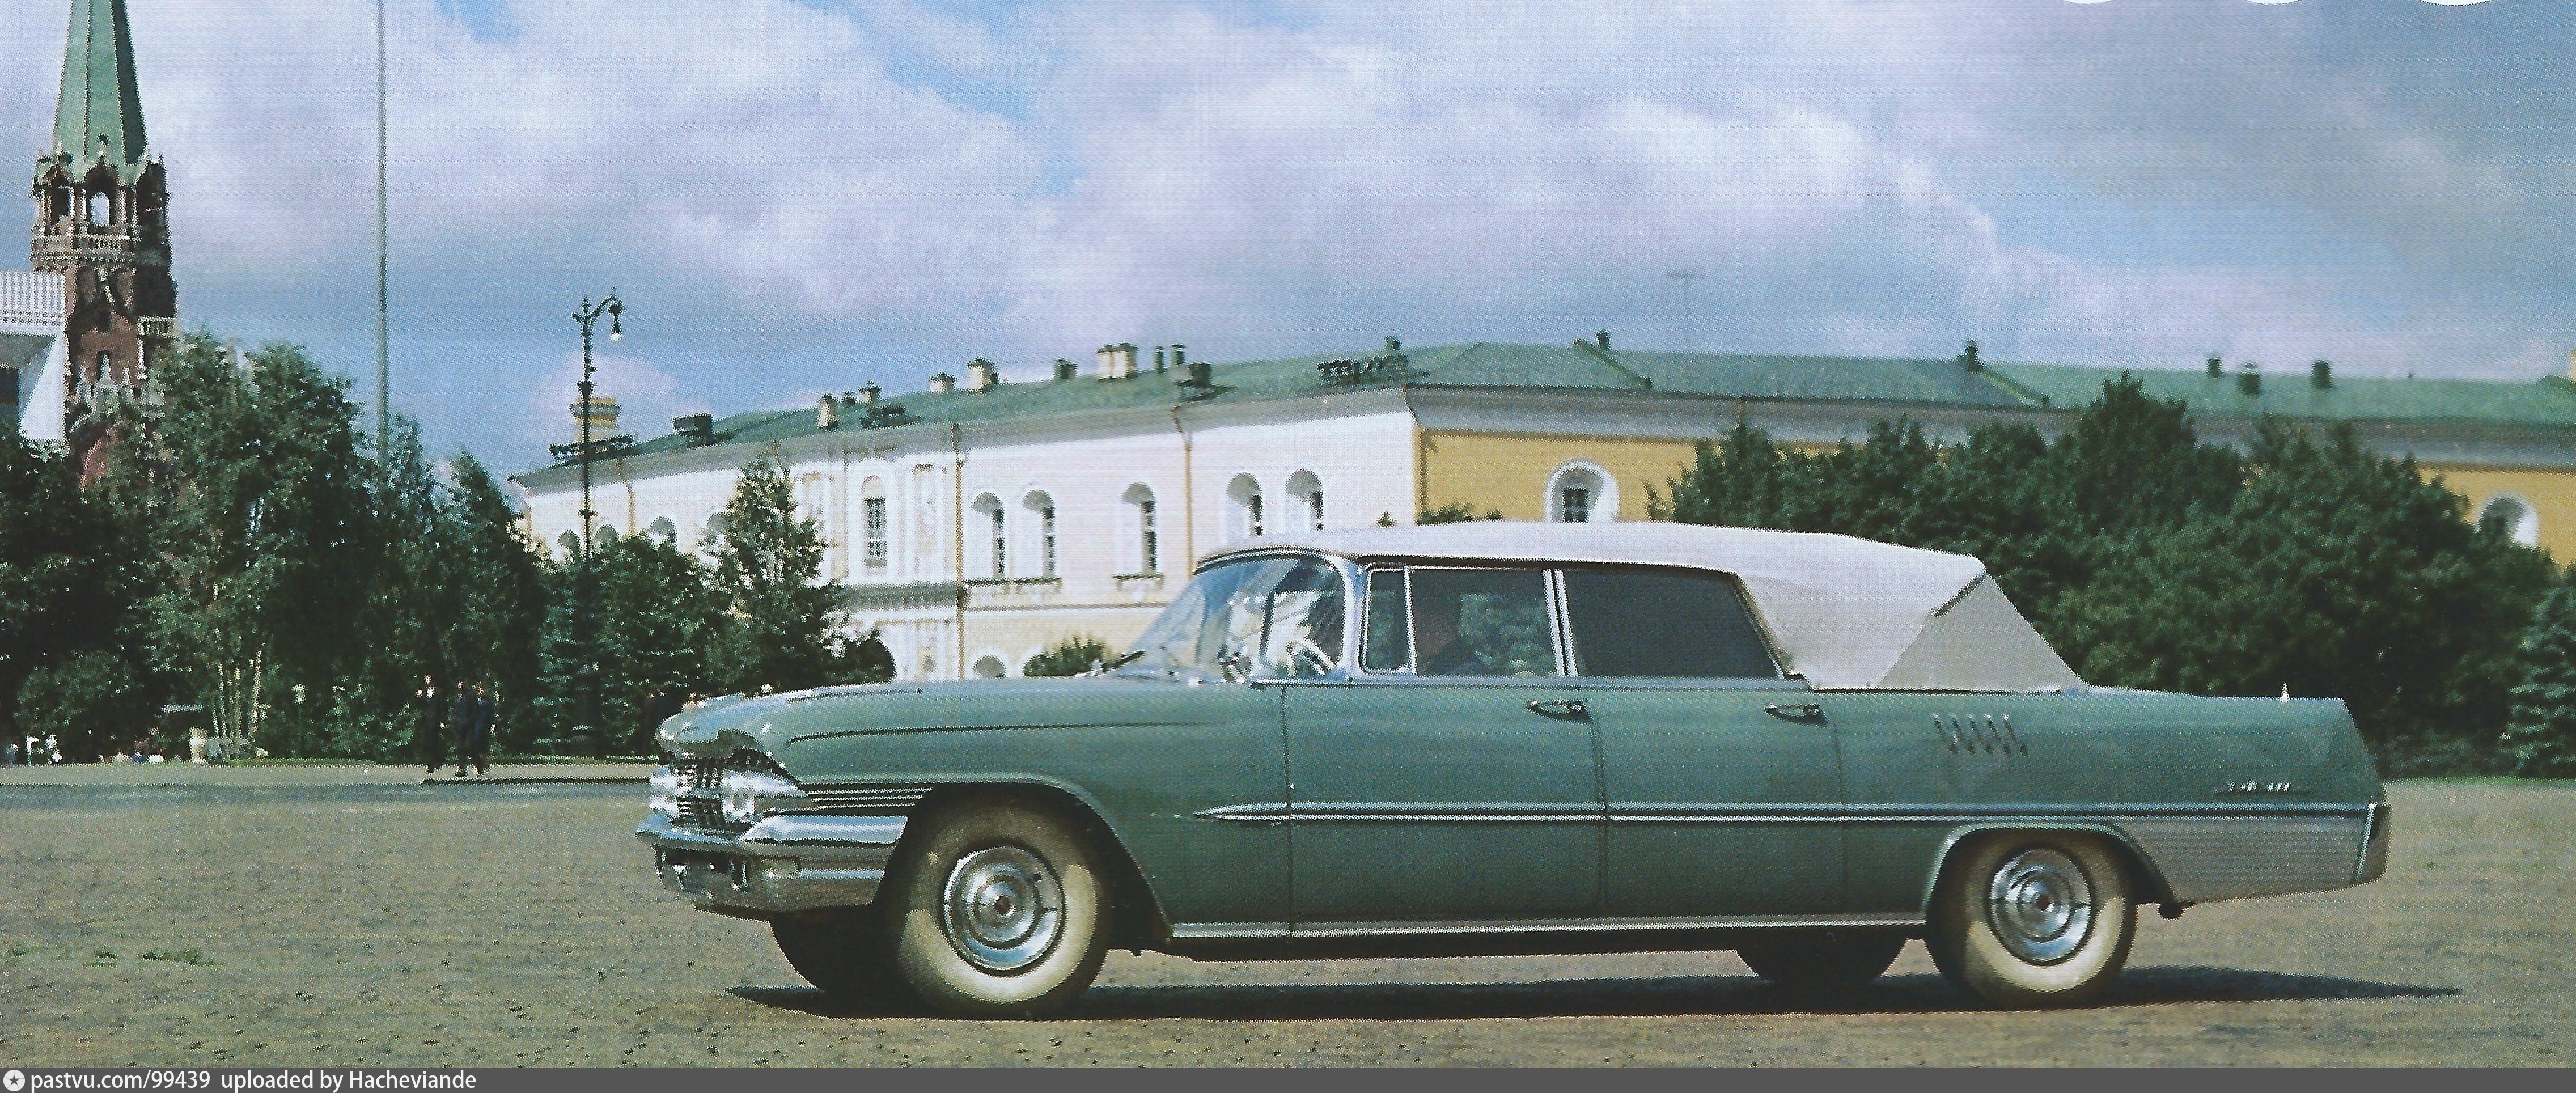 1968 Фаэтон ЗИЛ111Д в Кремле Vehicles, Cccp, Car